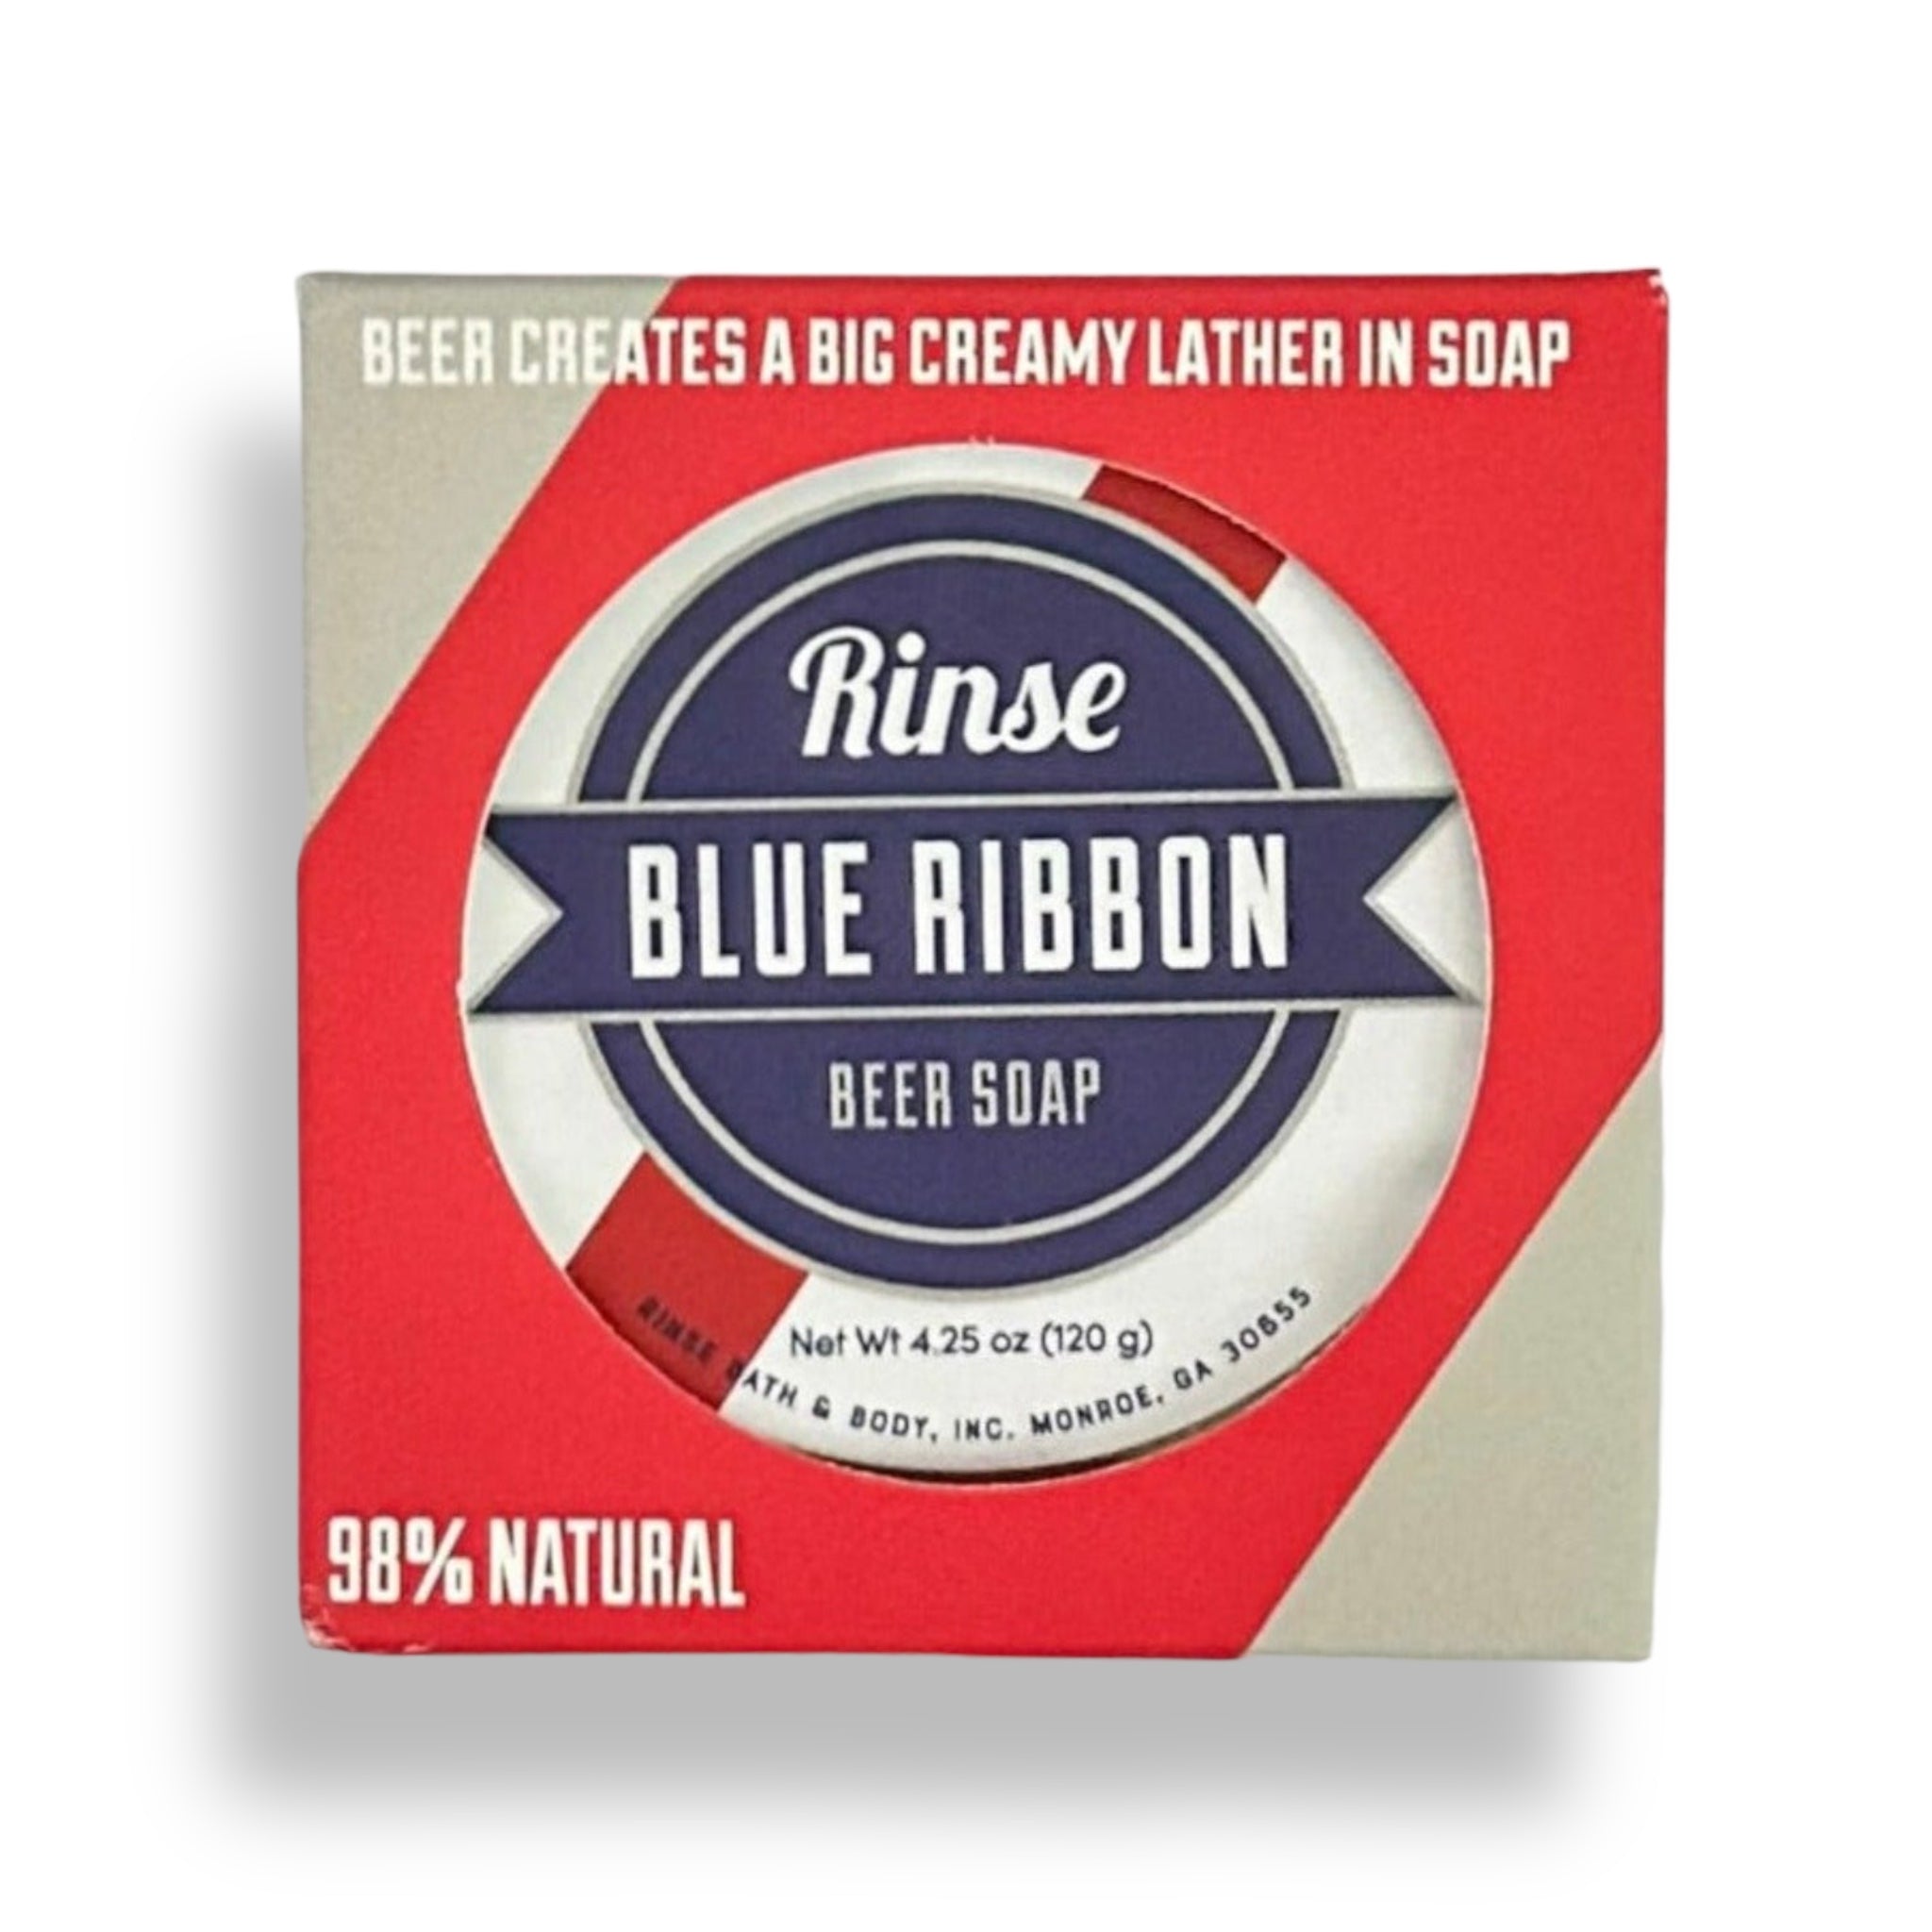 Rinse Soap Blue Ribbon BEER SOAP Natural